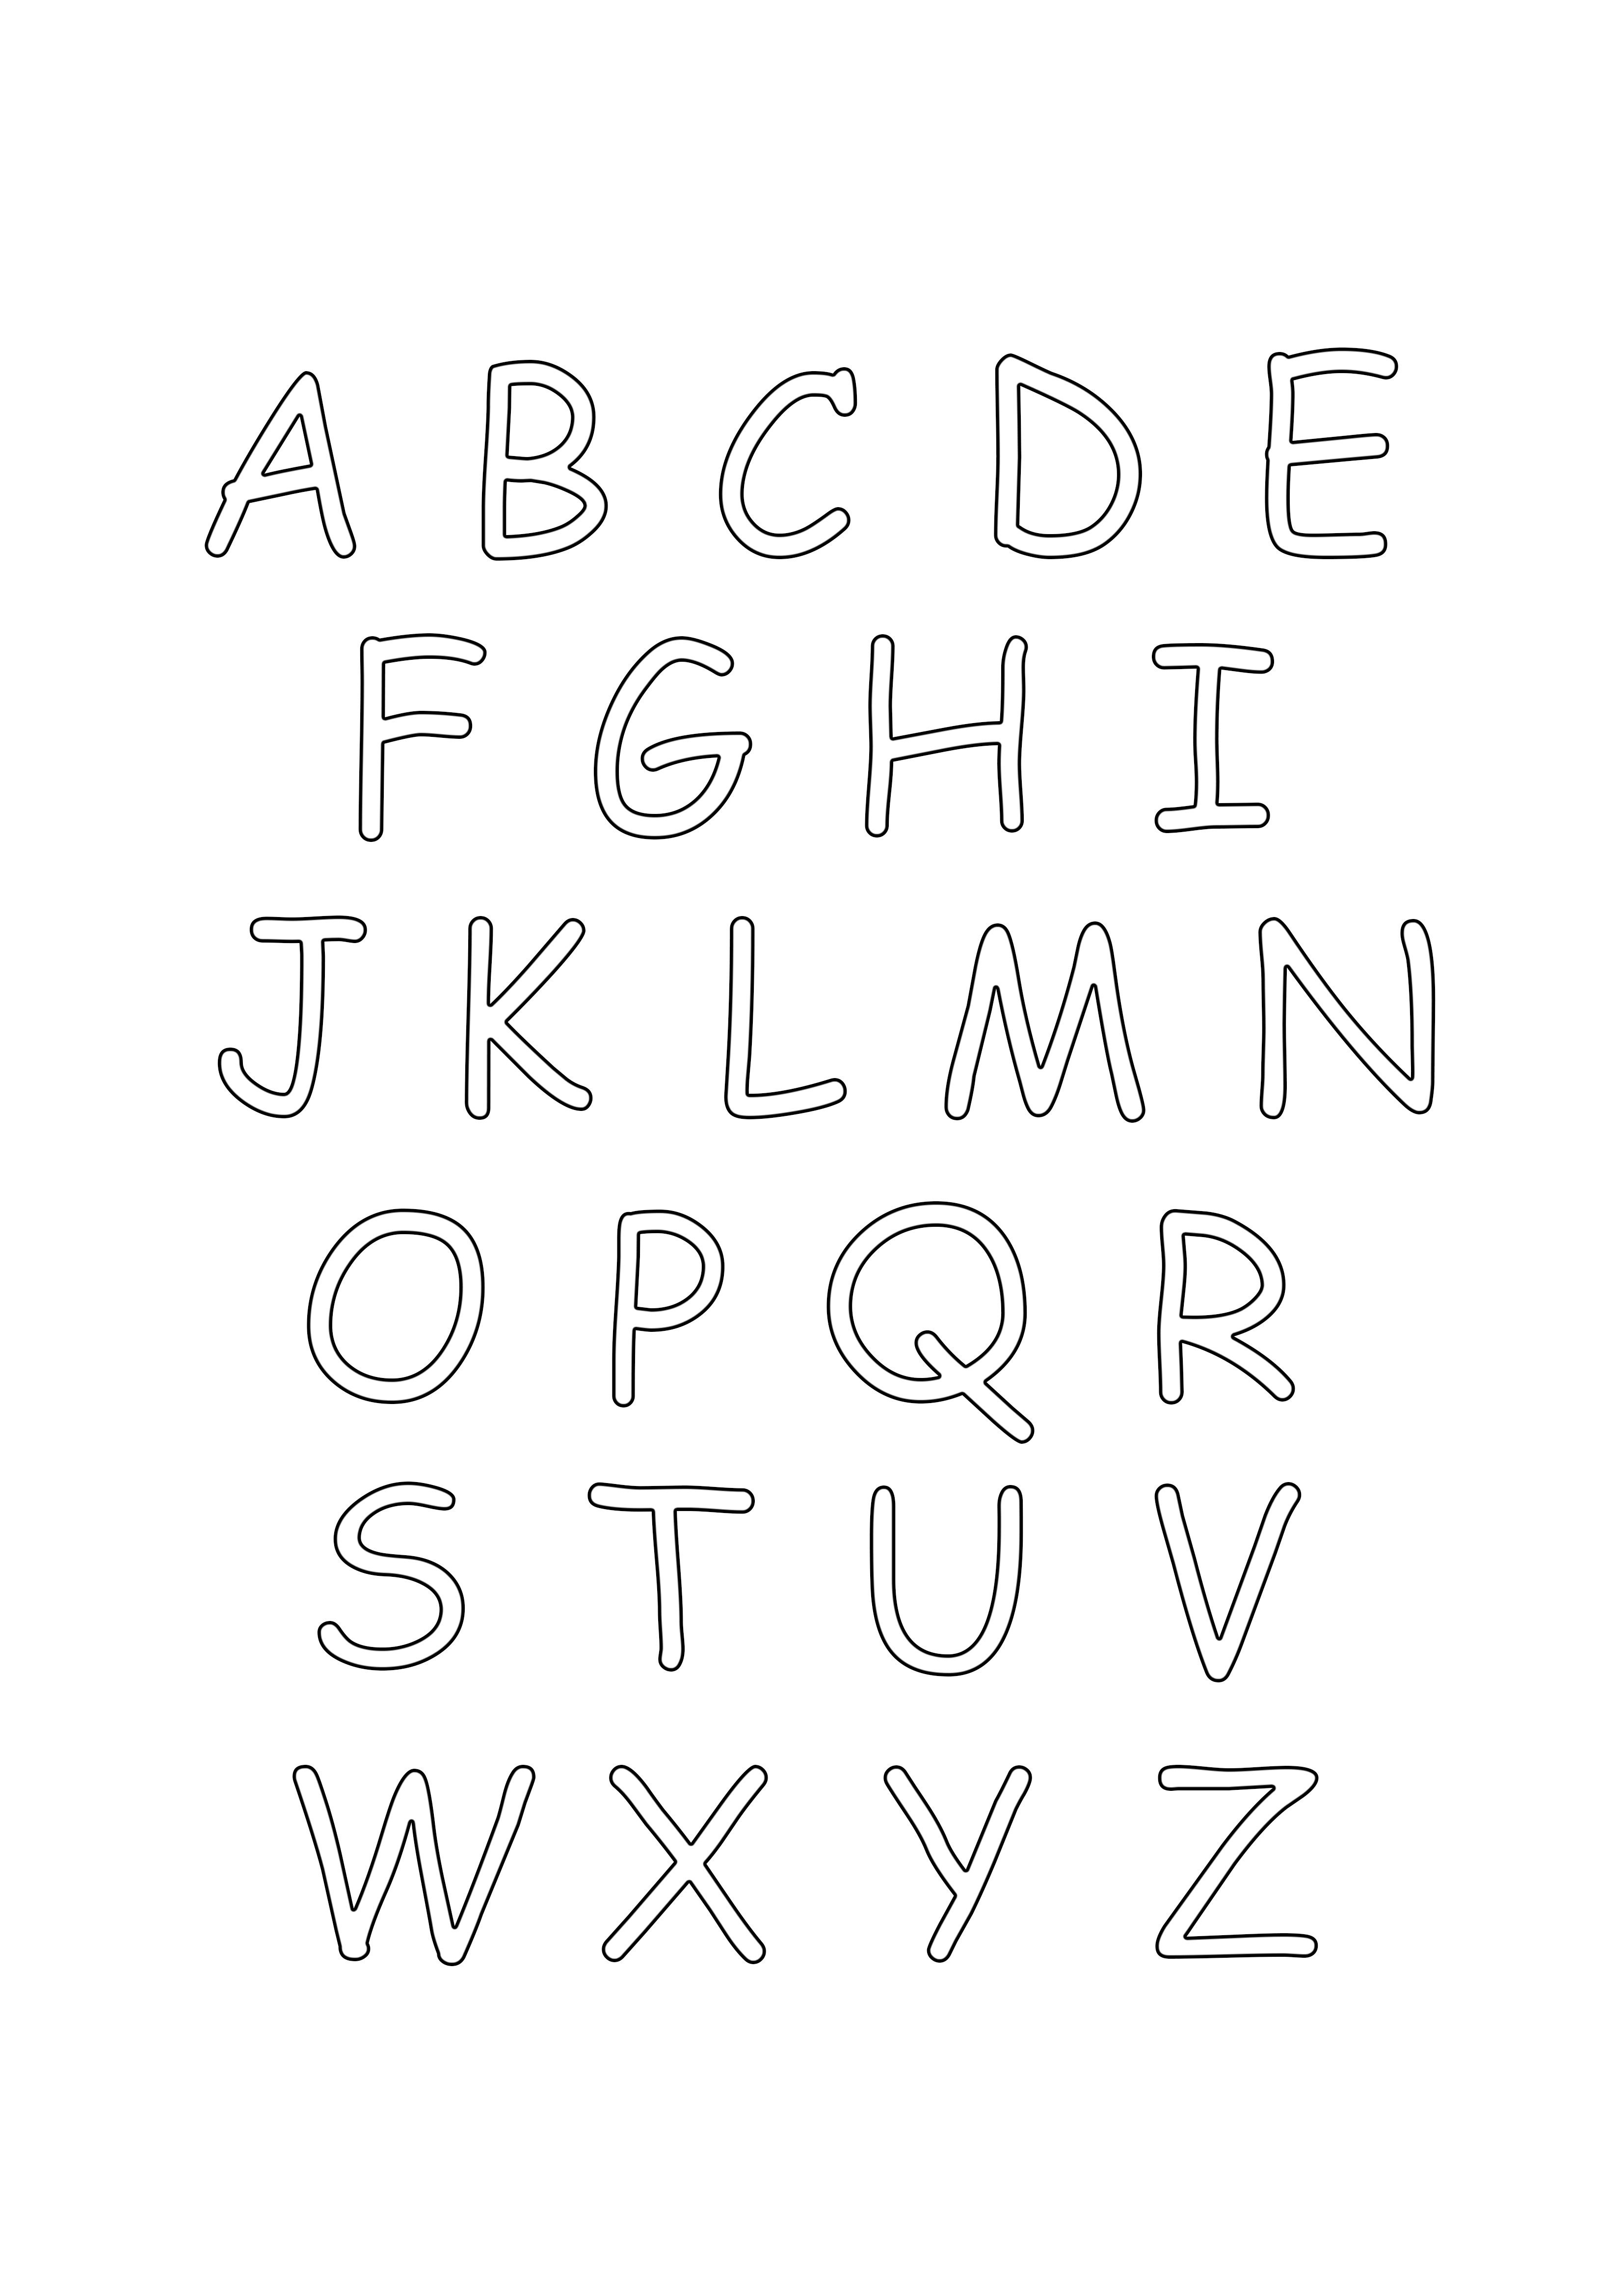 abecedario en mayusculas para colorear pagina para imprimir gratis